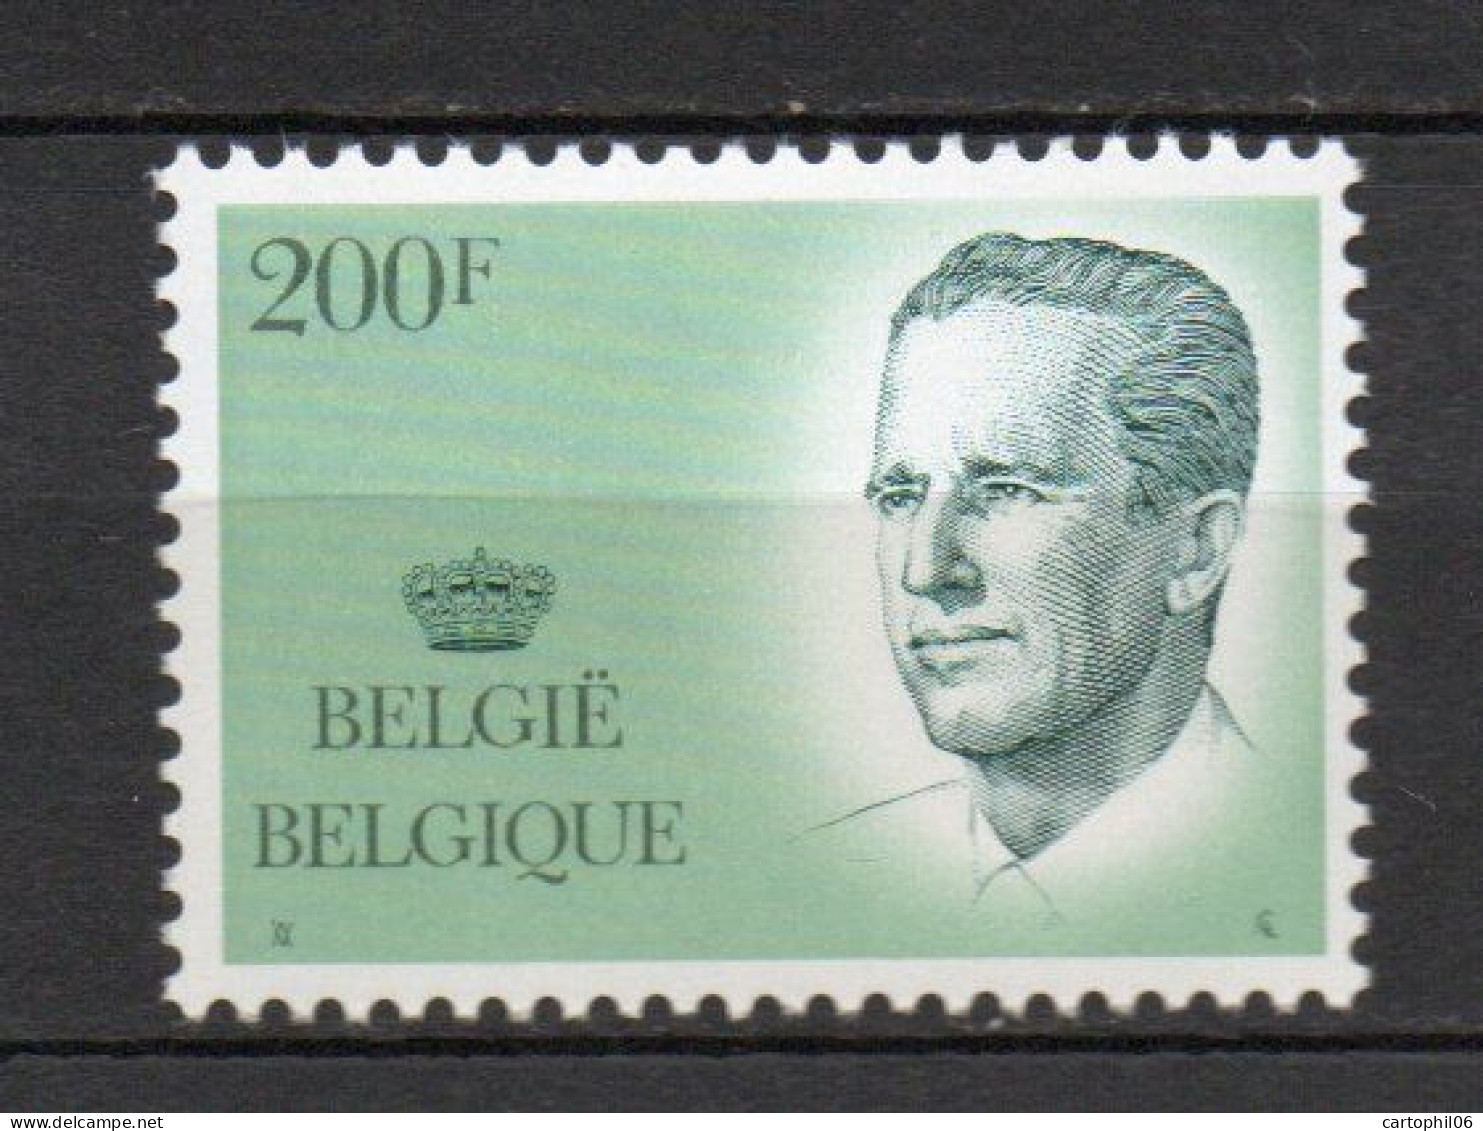 - BELGIQUE N° 2240 Neuf ** MNH - 200 F. Roi Baudouin 1er 1986 - Cote 30,00 € - - Neufs